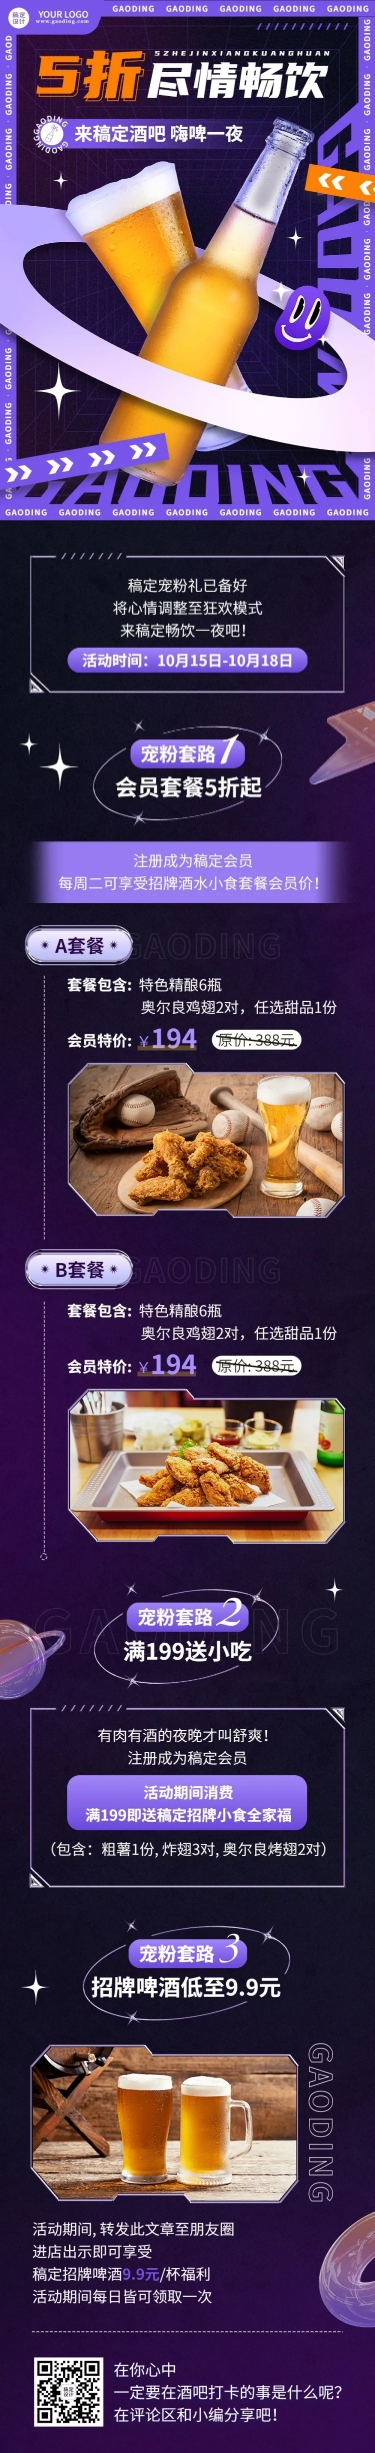 餐饮美食酒吧促销活动酷炫风文章长图